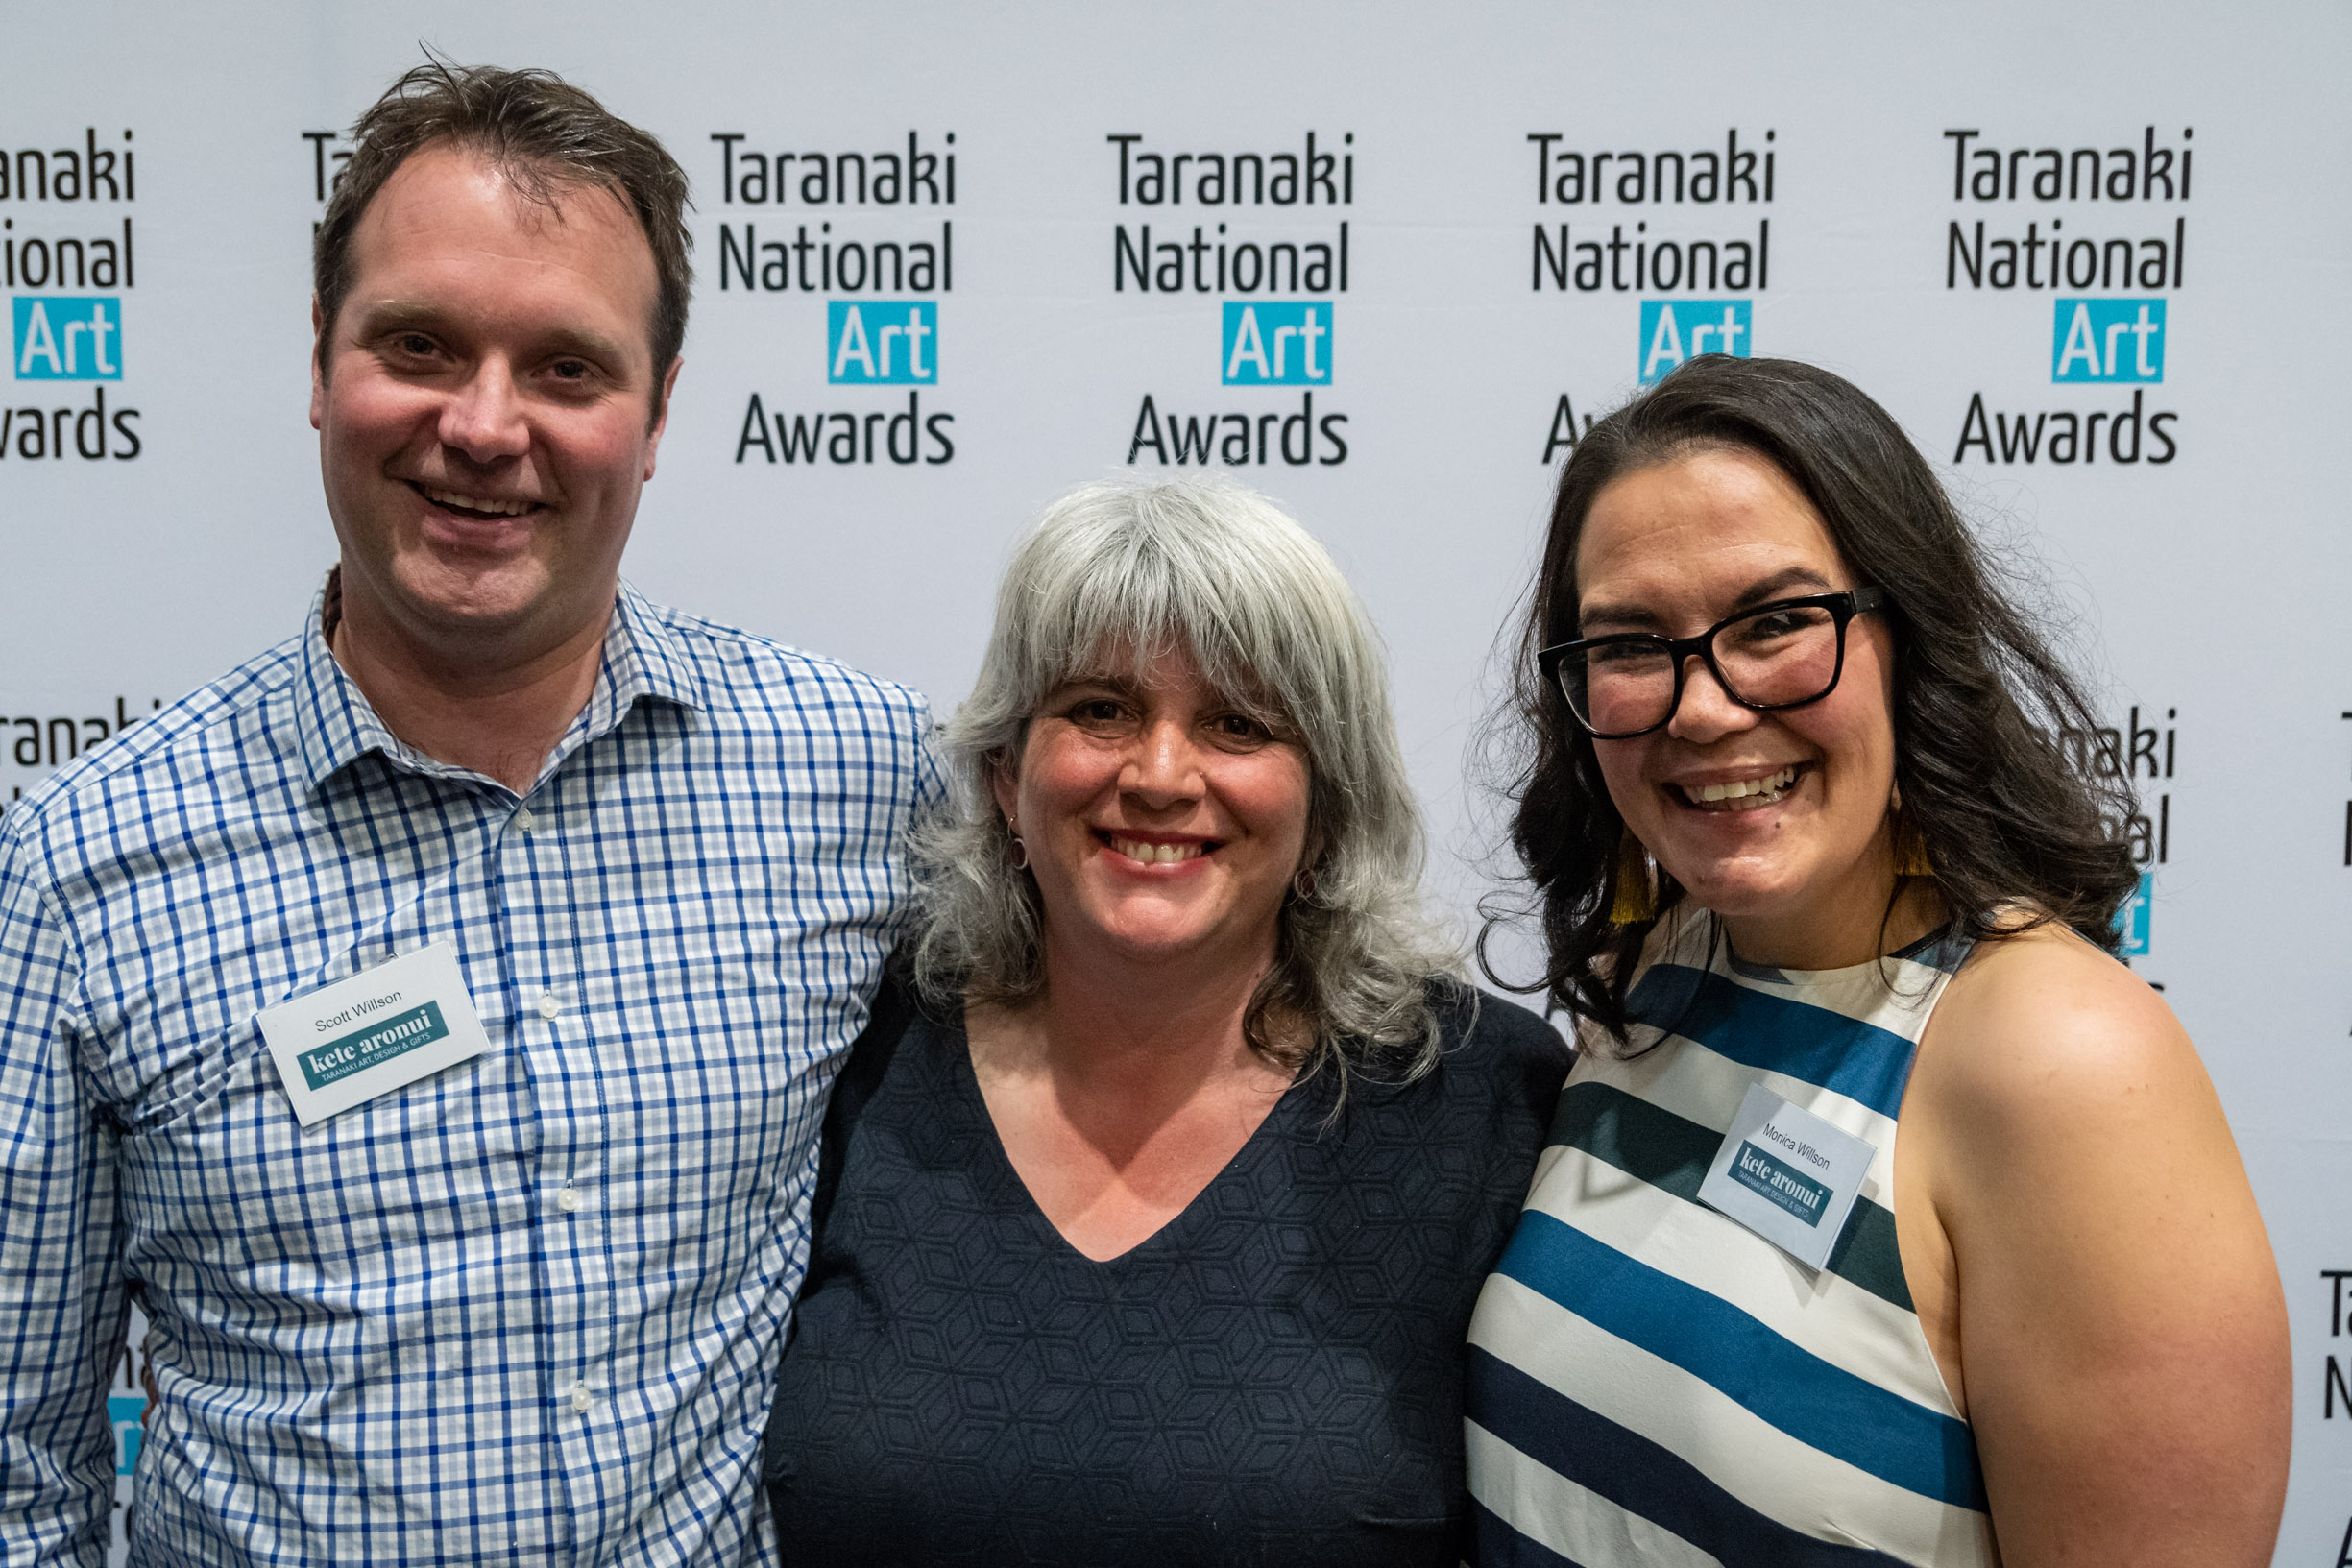 Taranaki National Art Awards 6